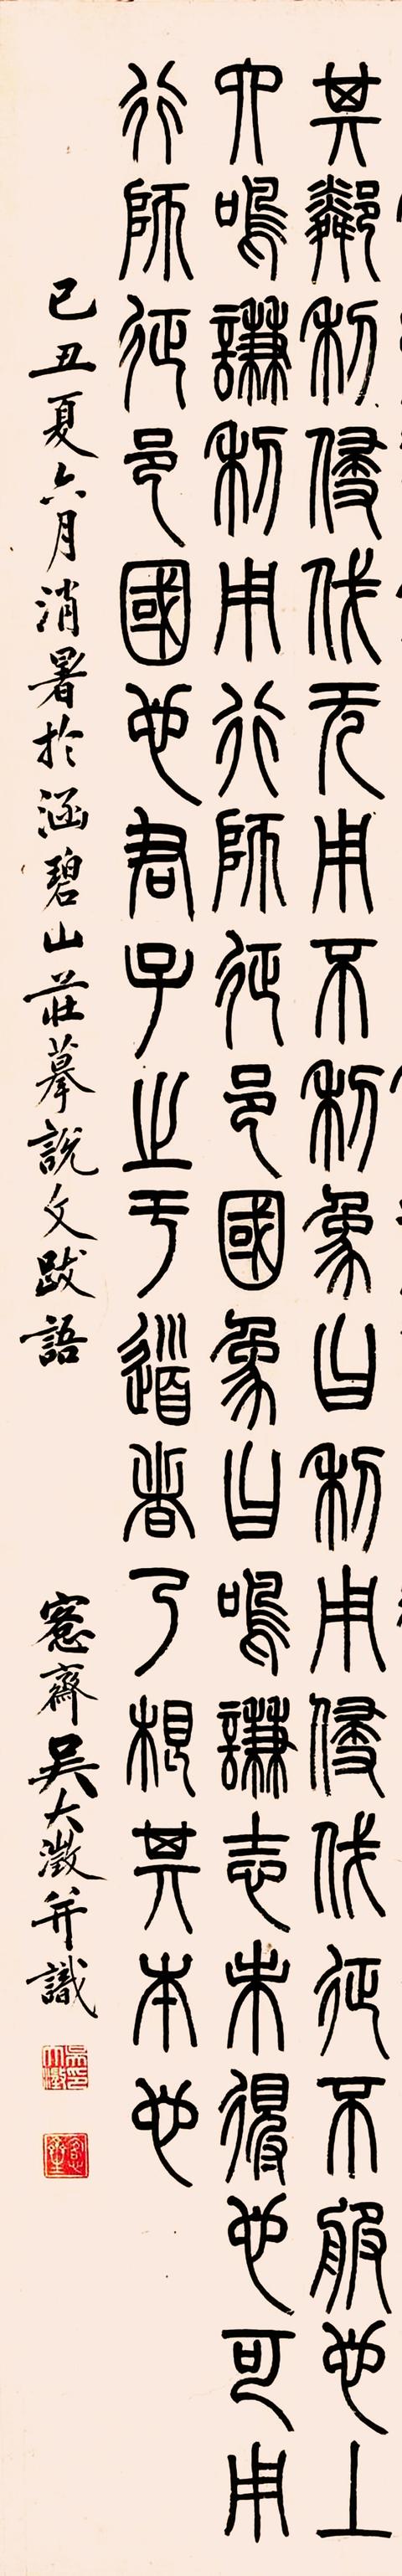 吴大澂 1889年 篆书节录《易经》立轴